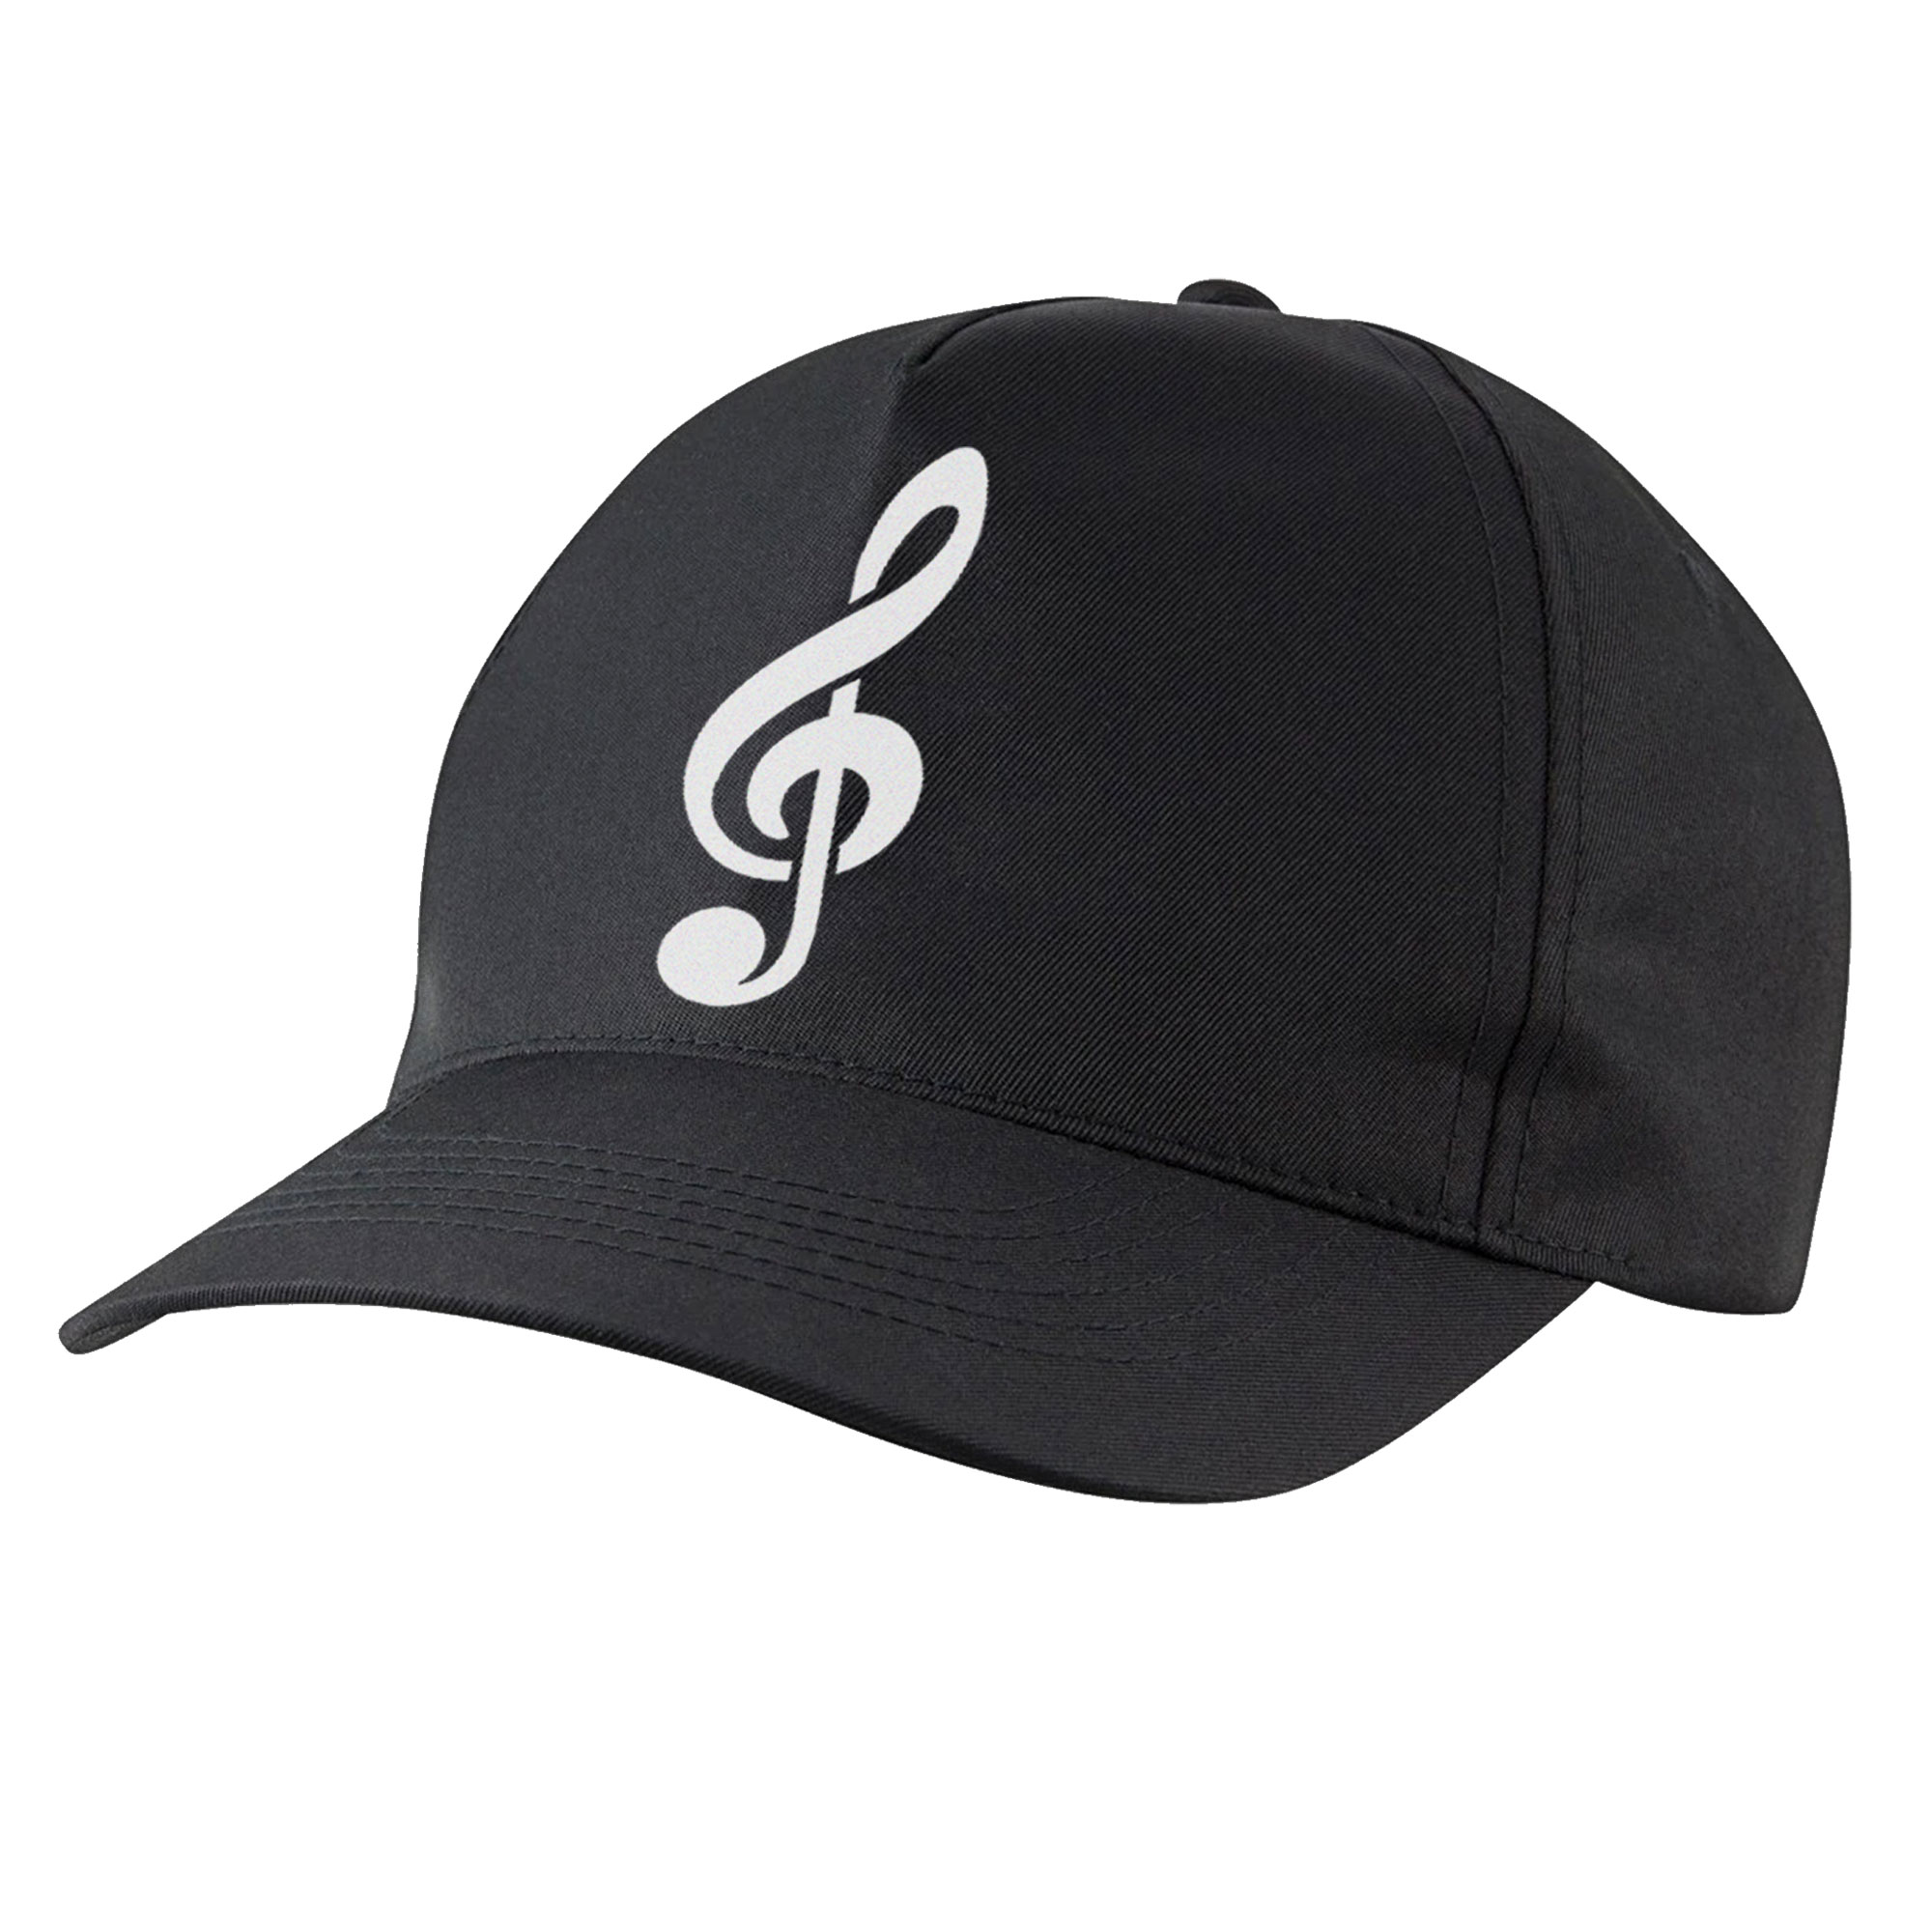 نکته خرید - قیمت روز کلاه کپ مدل کلید موسیقی سل کد bb-01 خرید